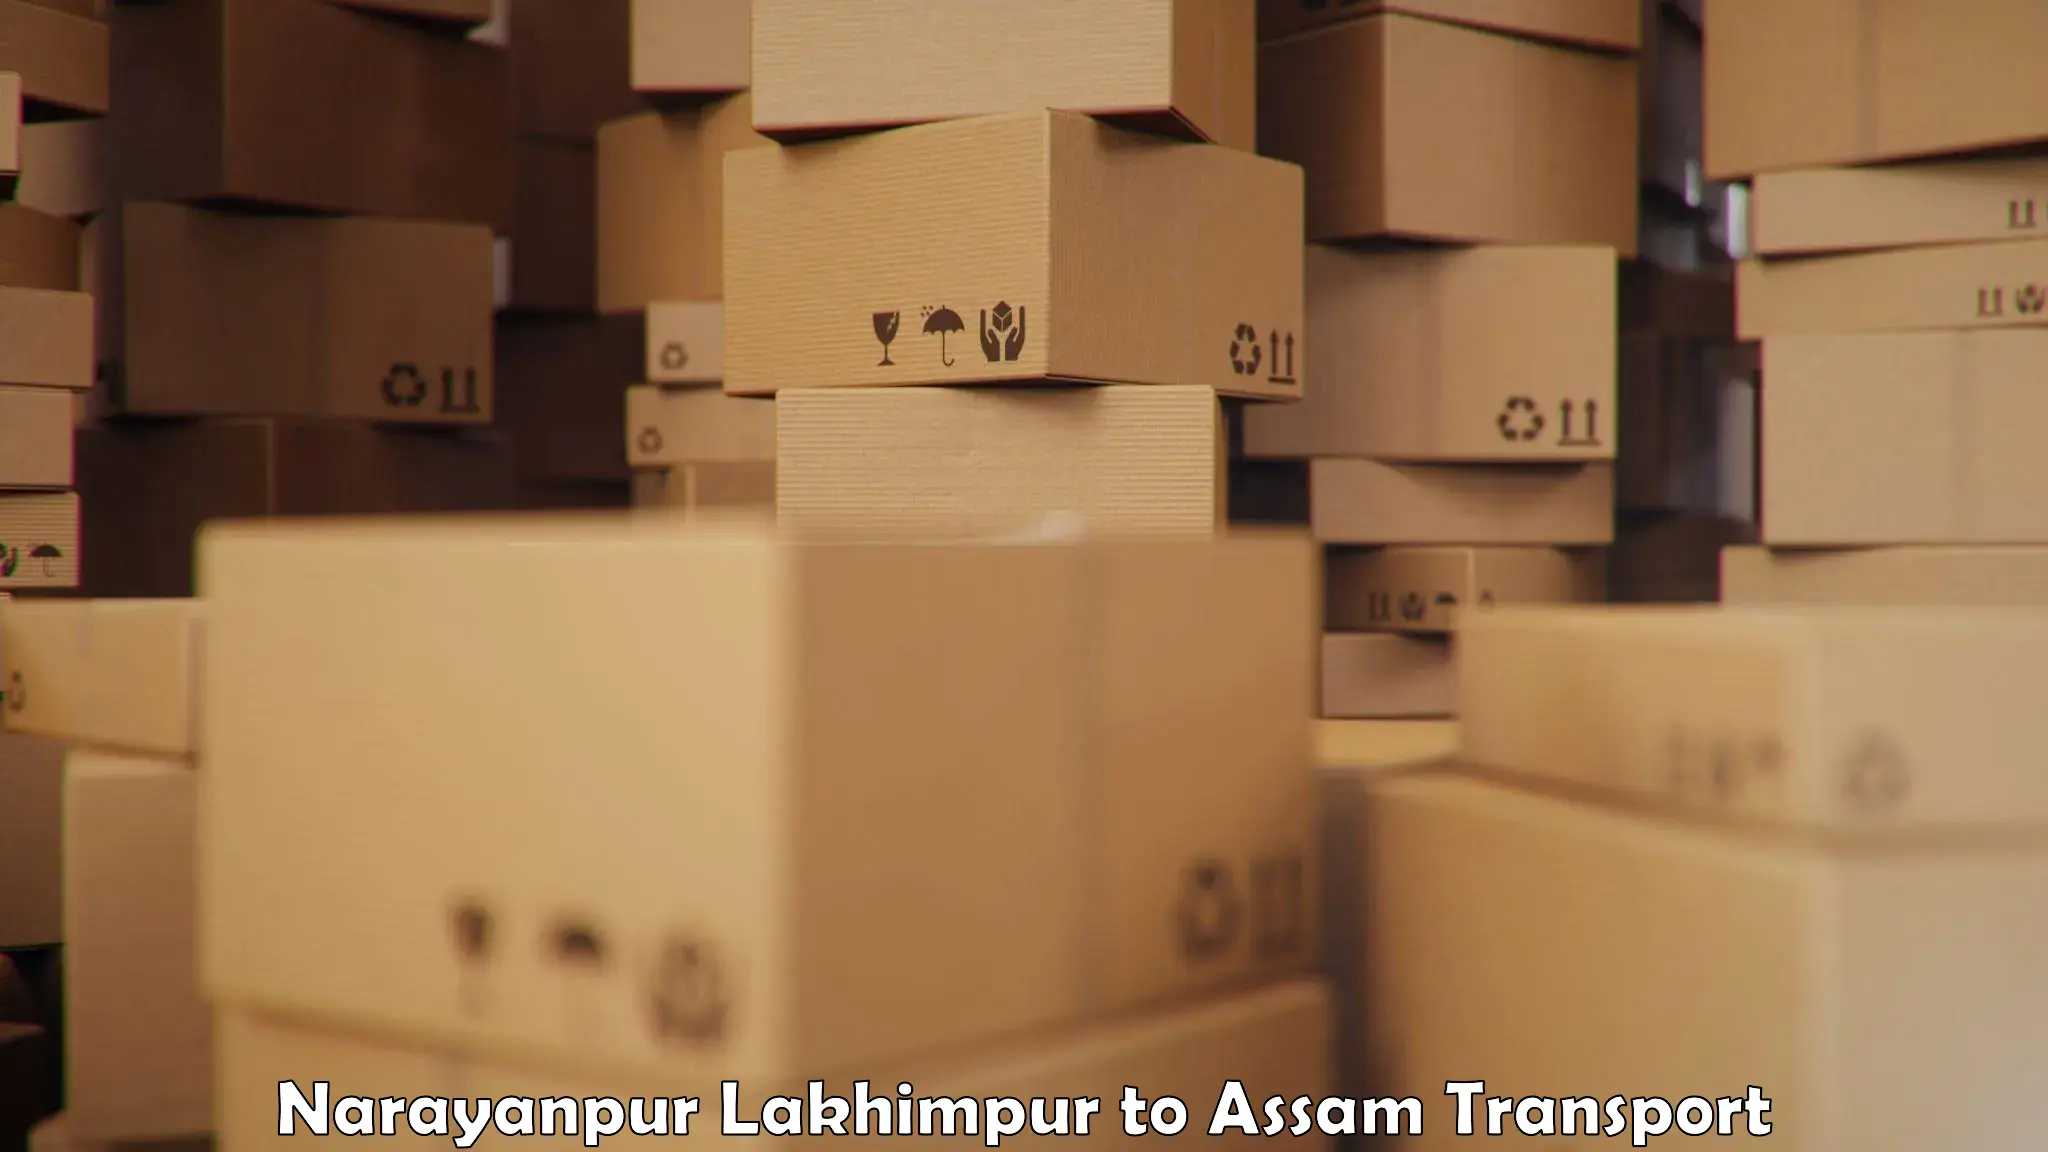 Online transport service Narayanpur Lakhimpur to Kusumtola